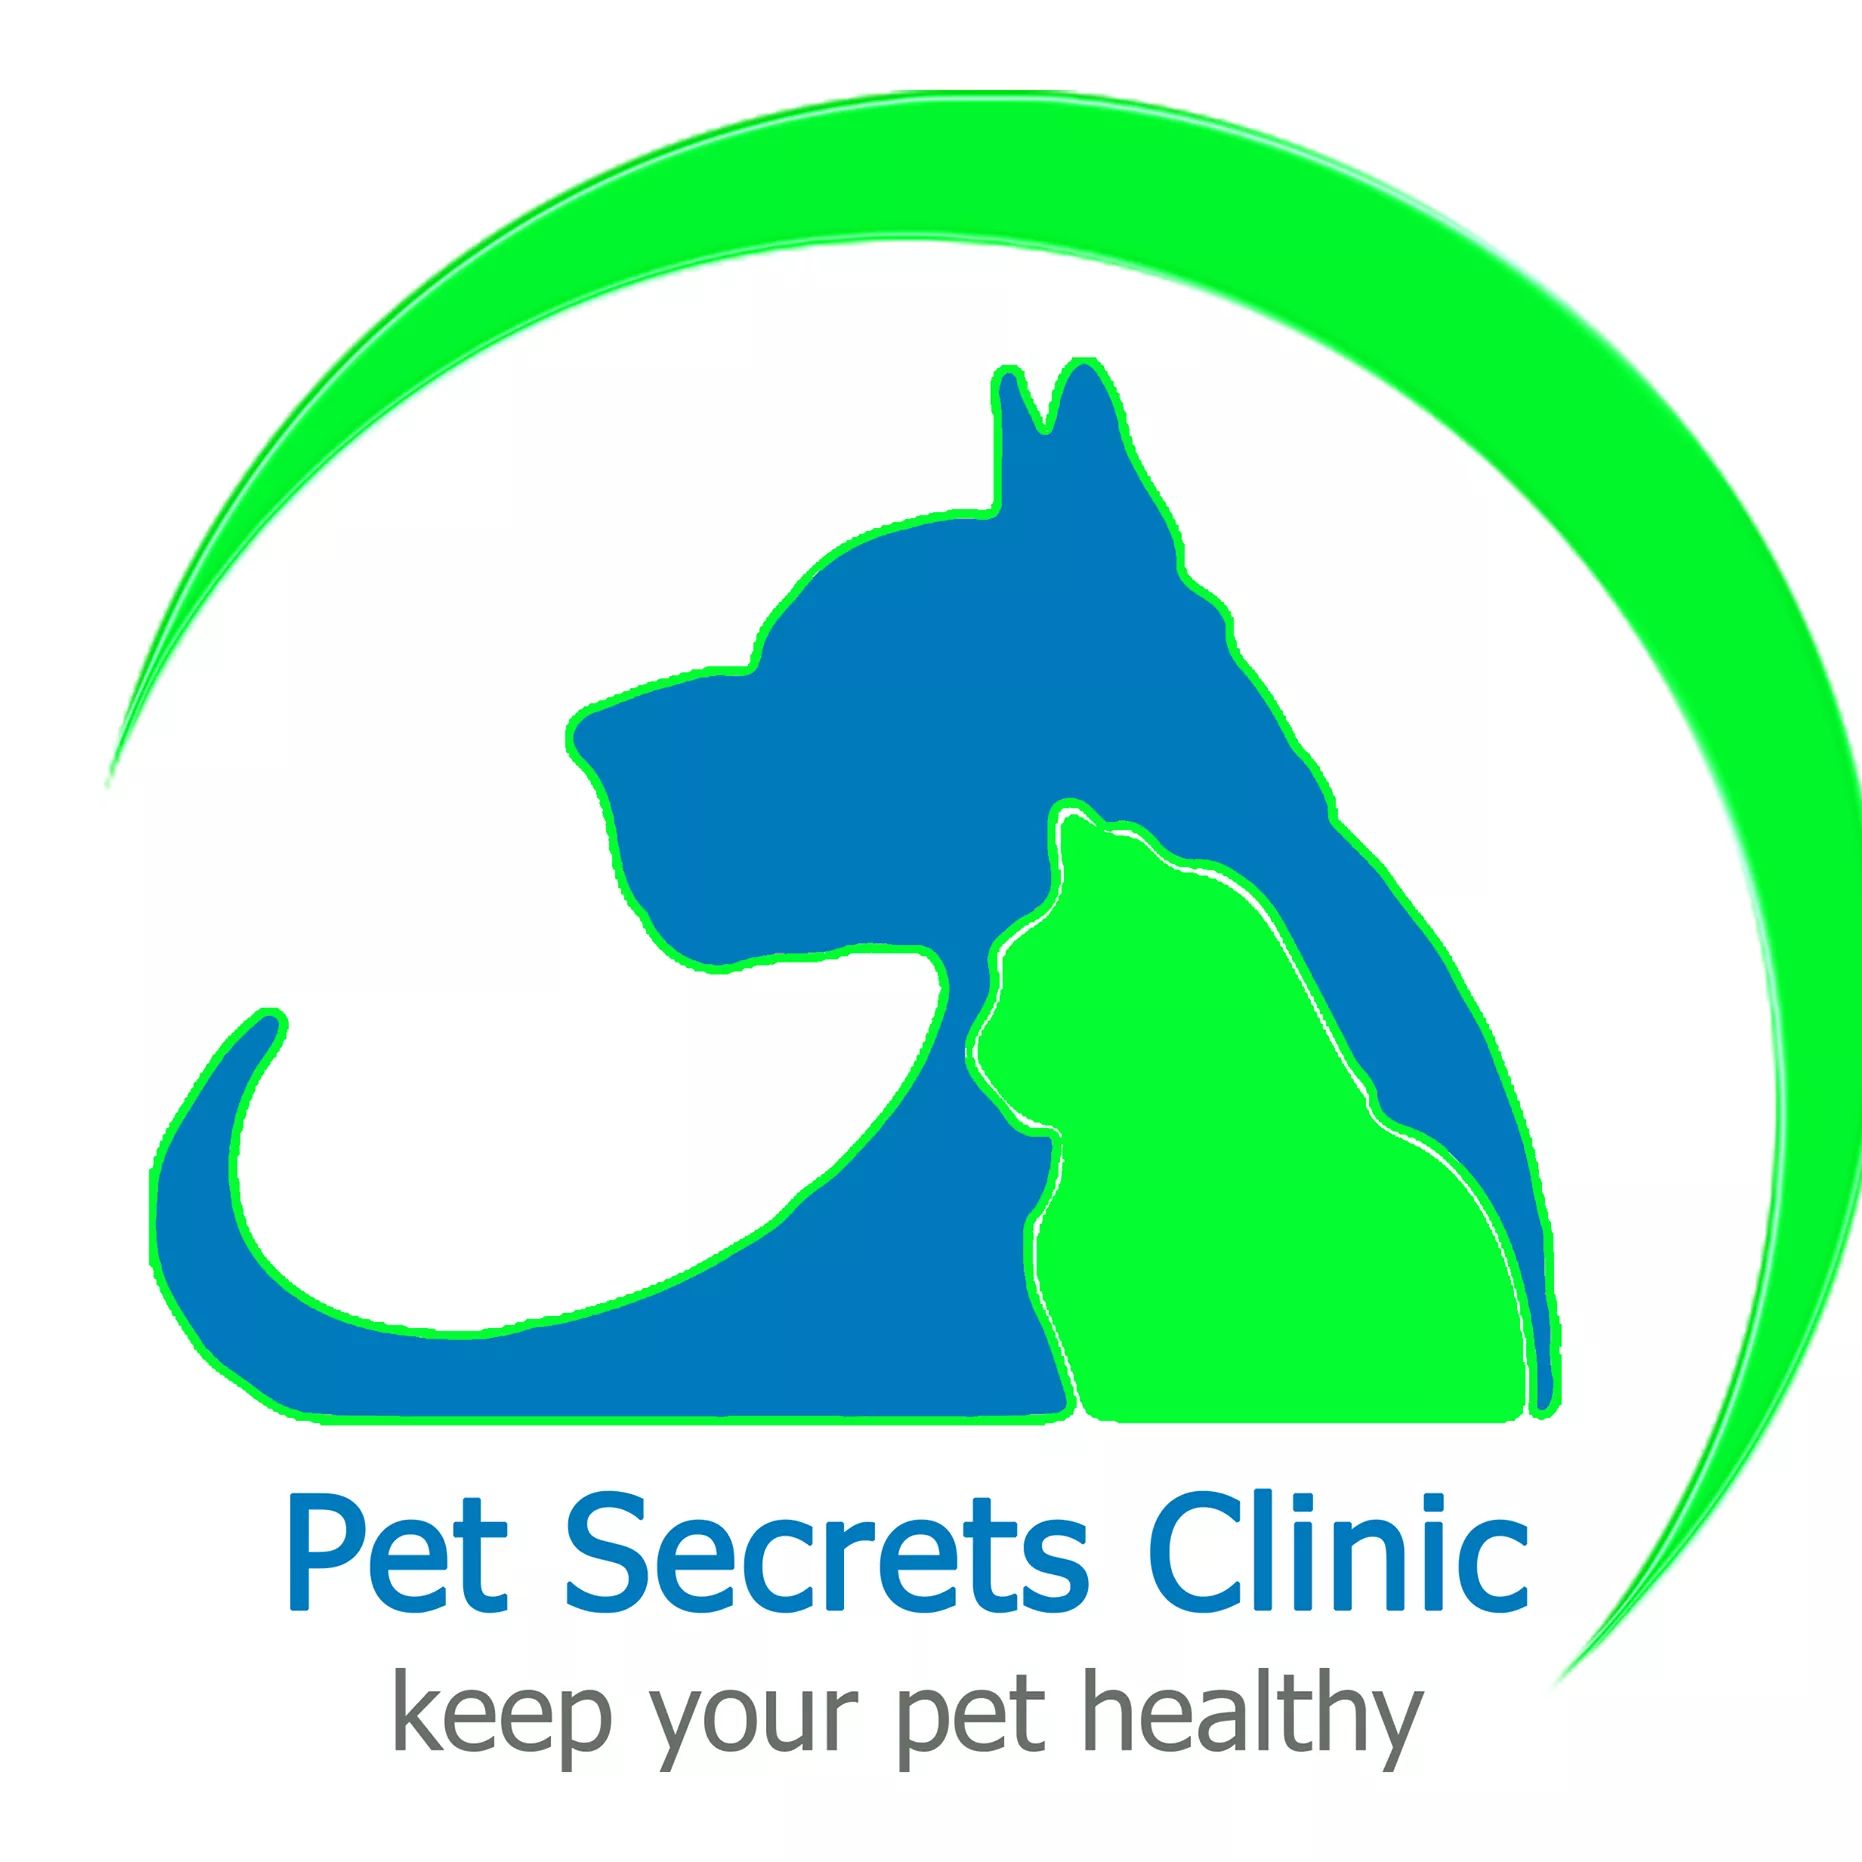 Pet Secrets clinic